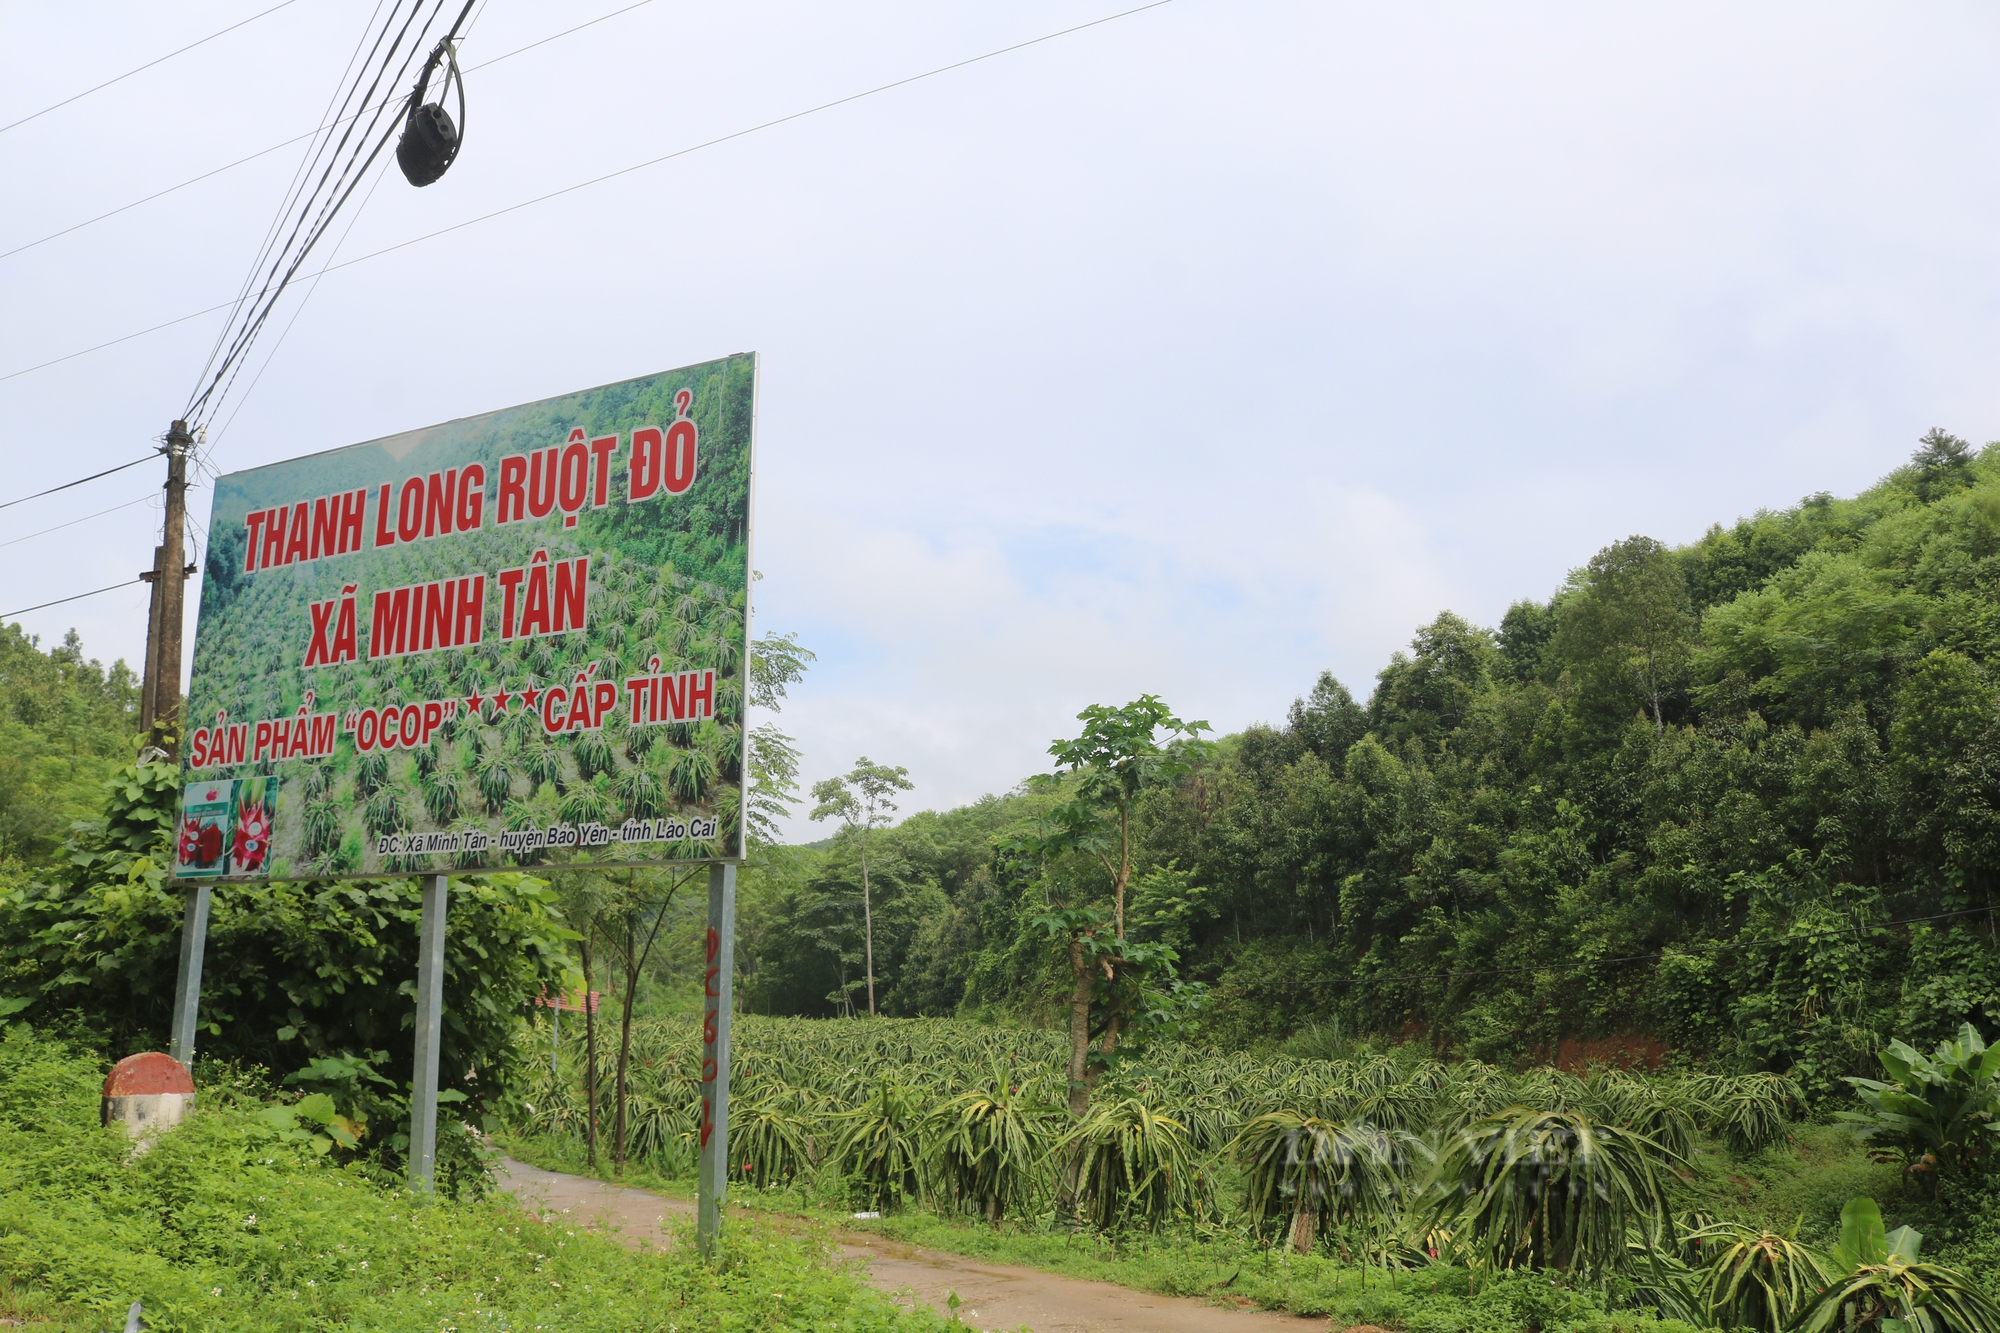 Thanh long ruột đỏ Bình Thuận bén rễ trên đất Lào Cai thành sản phẩm OCOP - Ảnh 4.